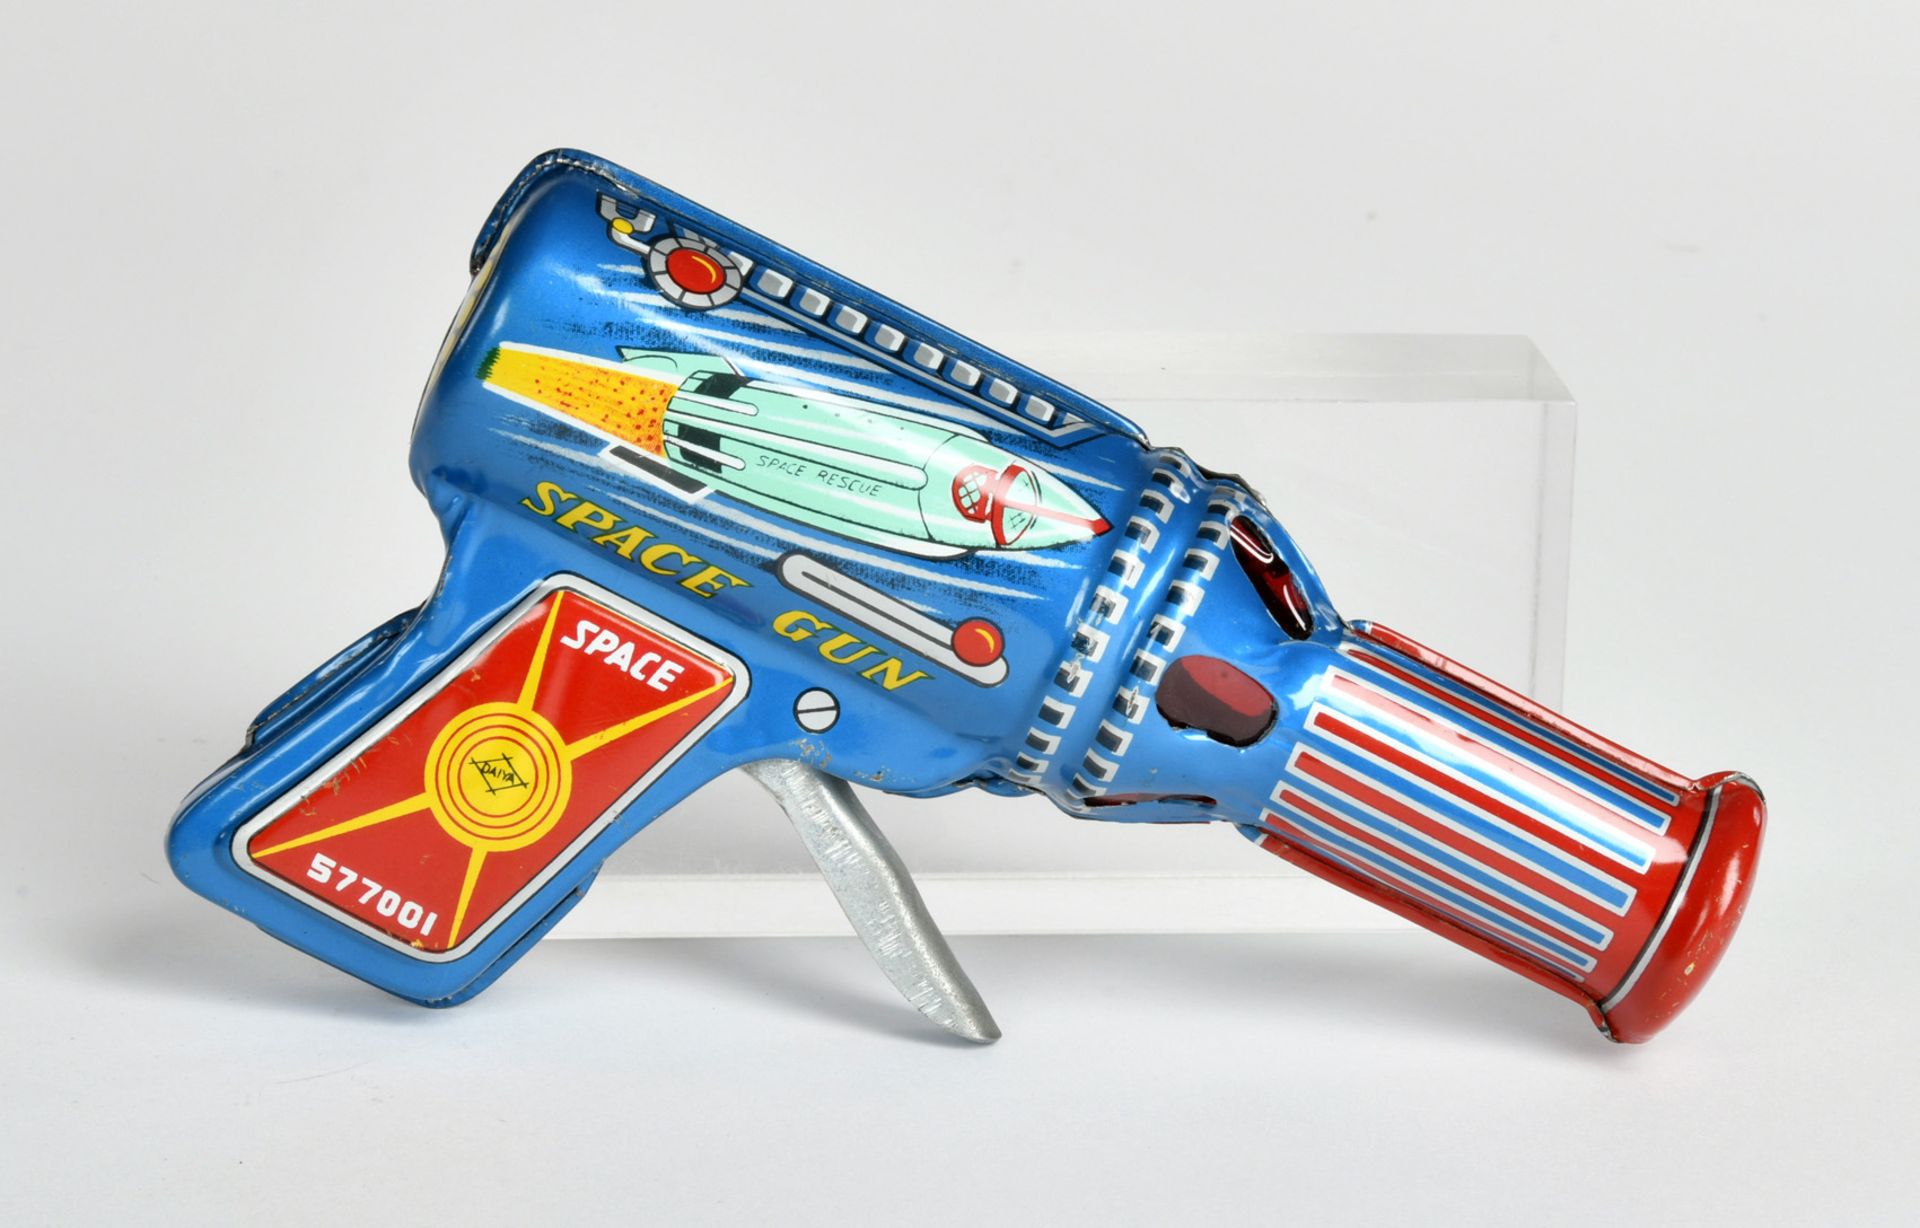 Daiya, Baby Space Gun, Japan, 15 cm, tin, funct. ok, box C 1, C 1- - Image 2 of 3